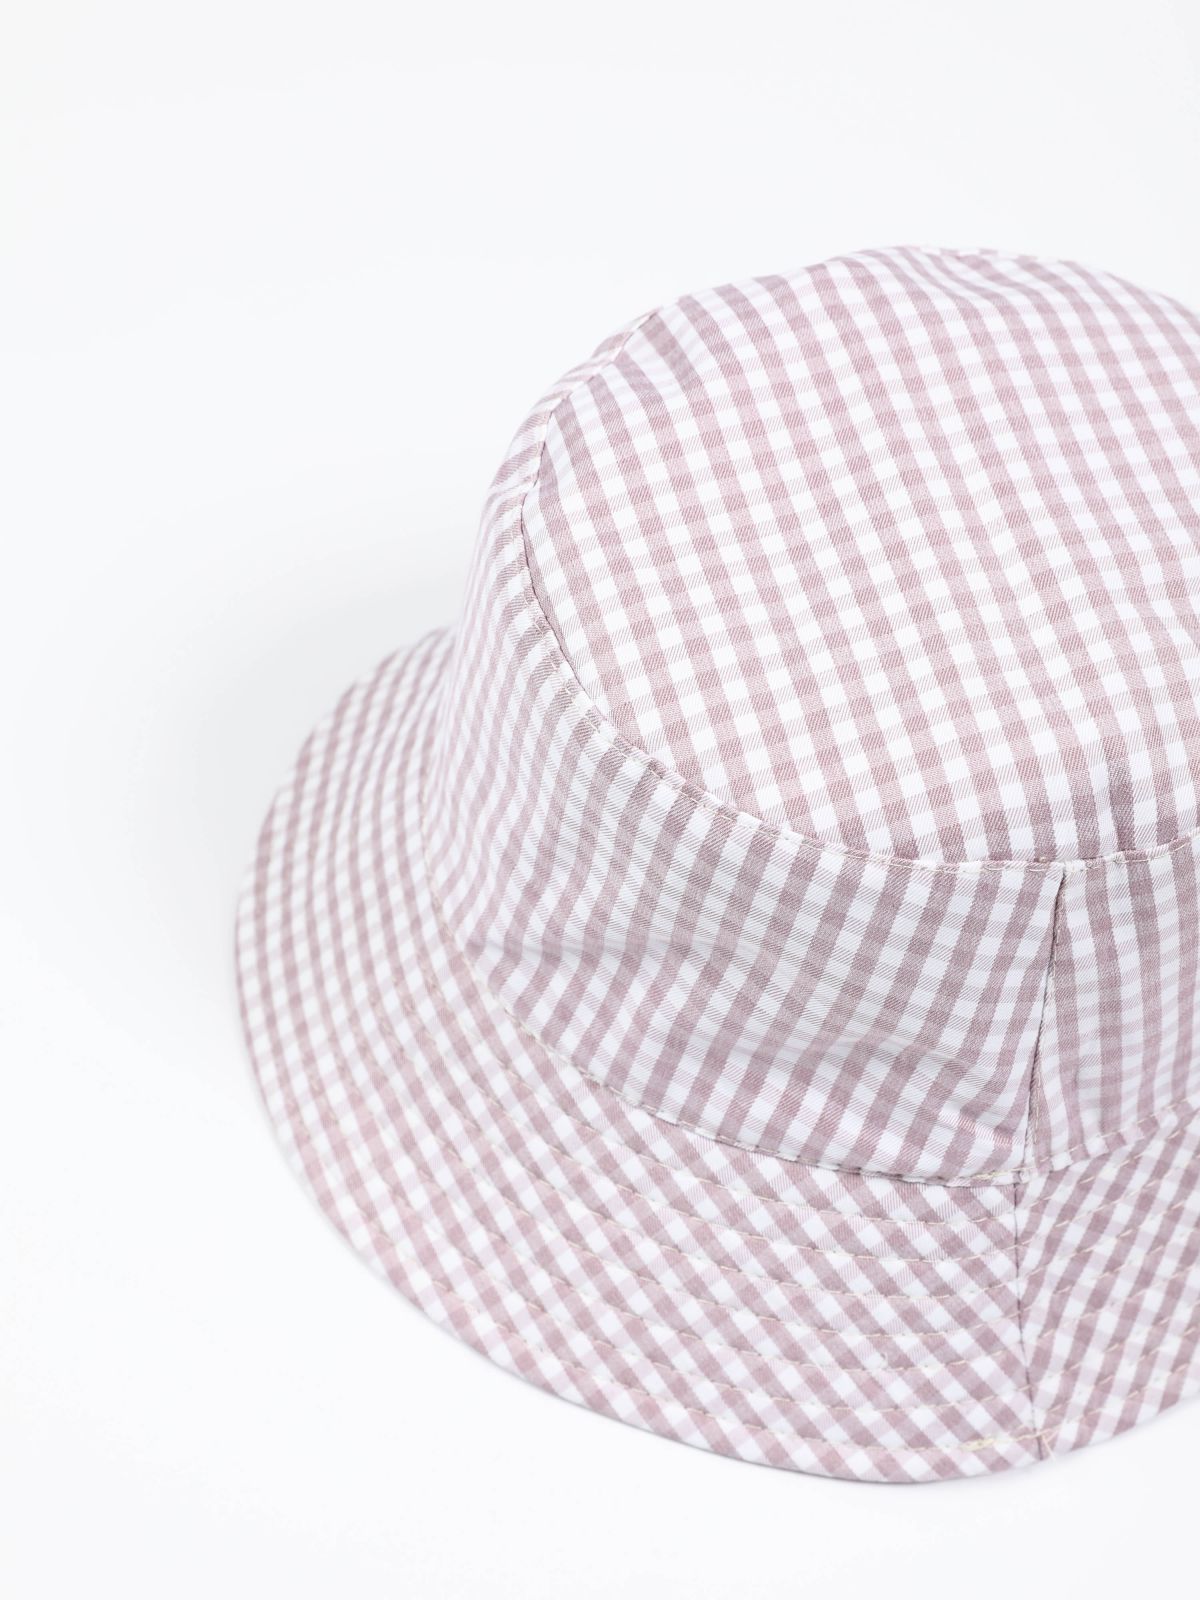  כובע באקט הדפס דו צדדי של TERMINAL X